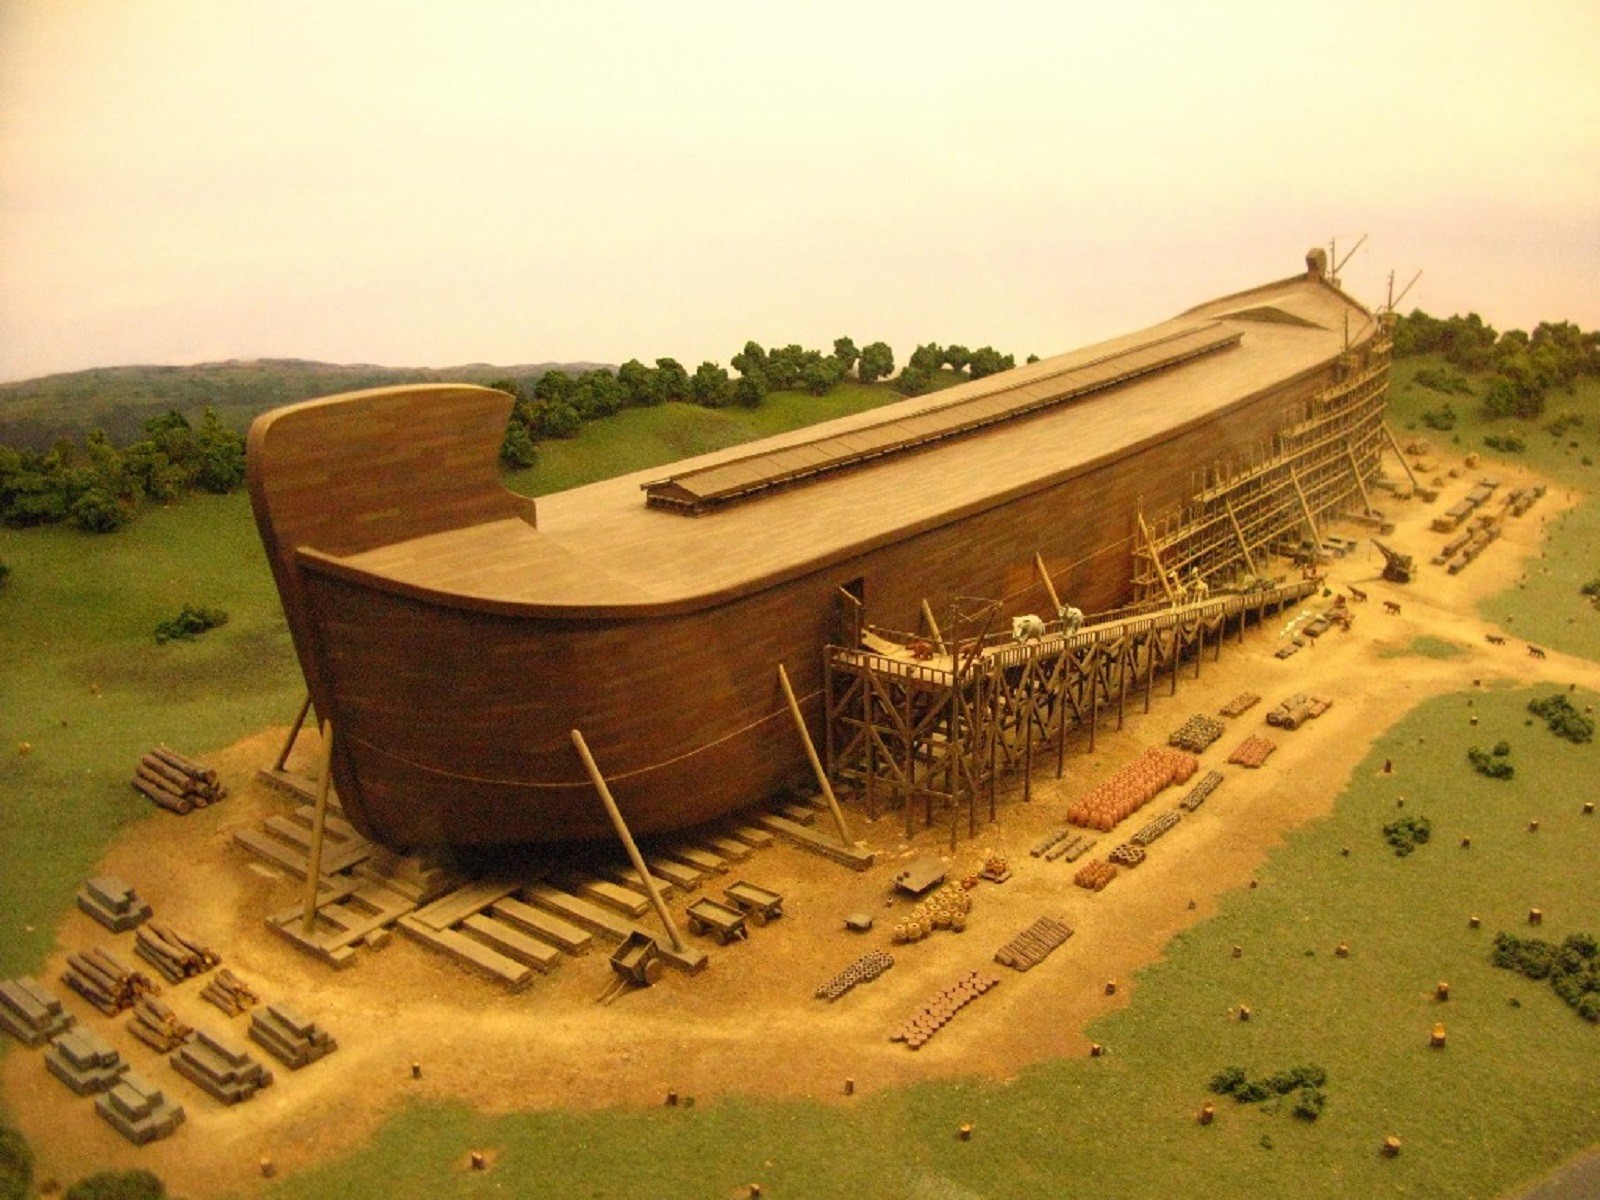 Arka Noego istniała naprawdę? Archeolodzy wskazali lokalizację gigantycznego obiektu, który przypomina łódź